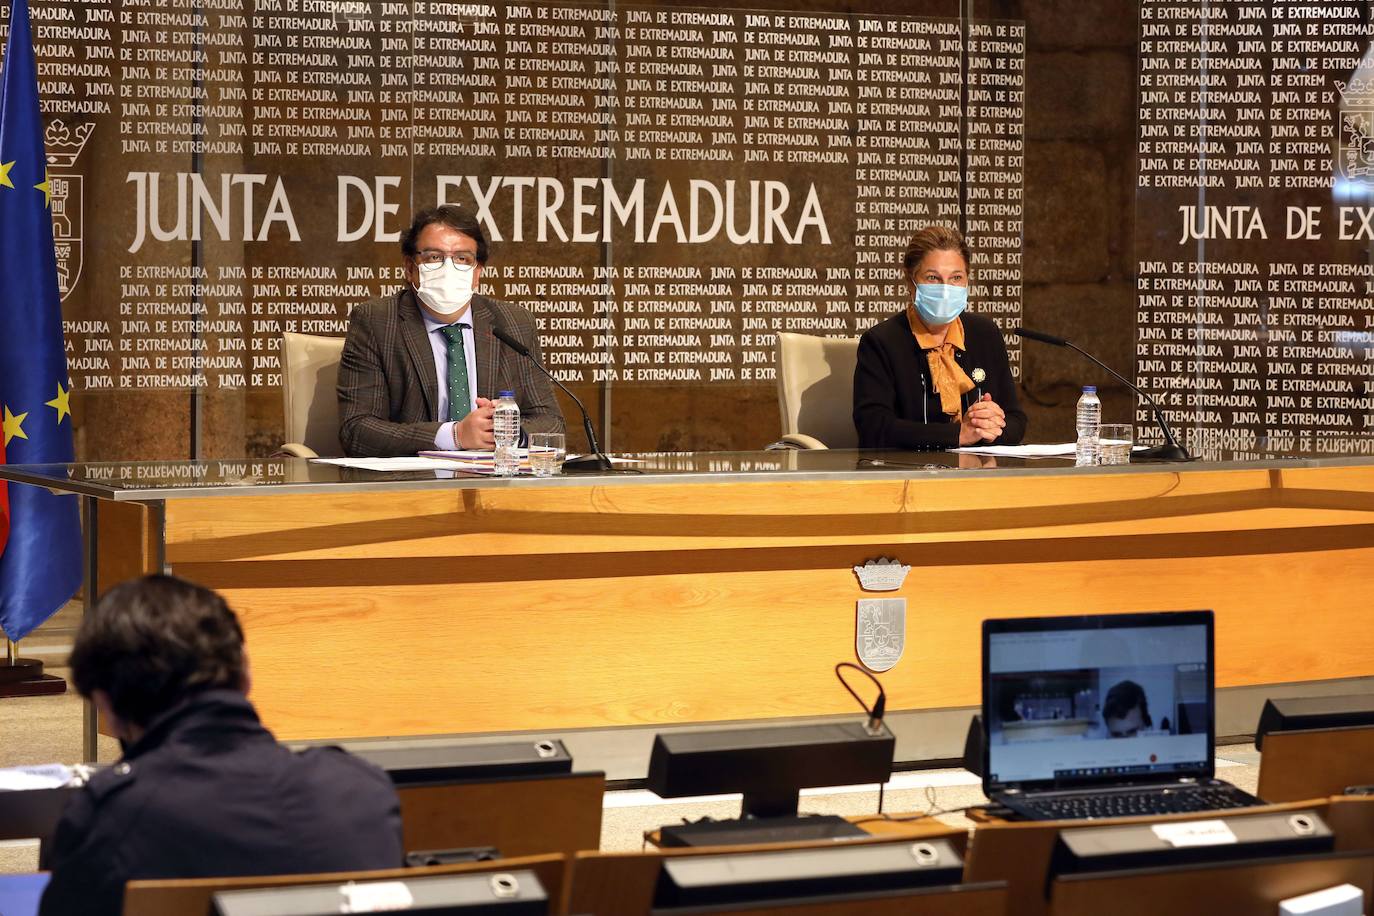 La Junta decidirá la próxima semana qué se podrá hacer esta Navidad en Extremadura